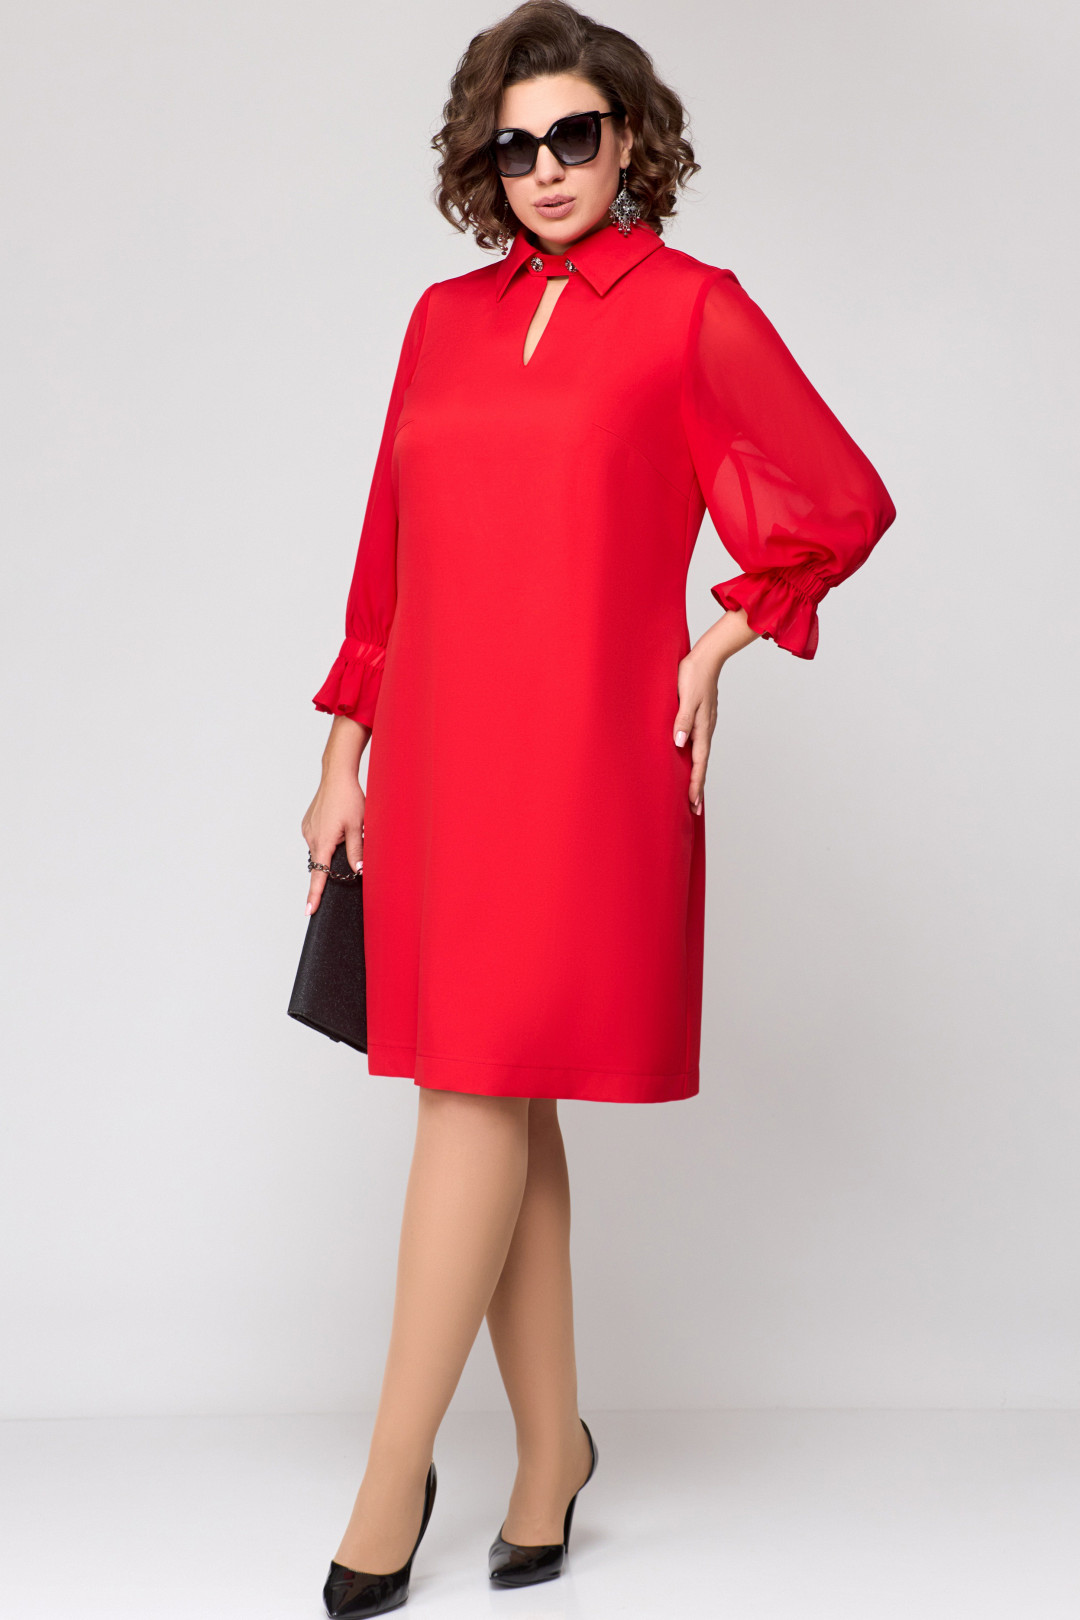 Платье EVA GRANT 7185 красный